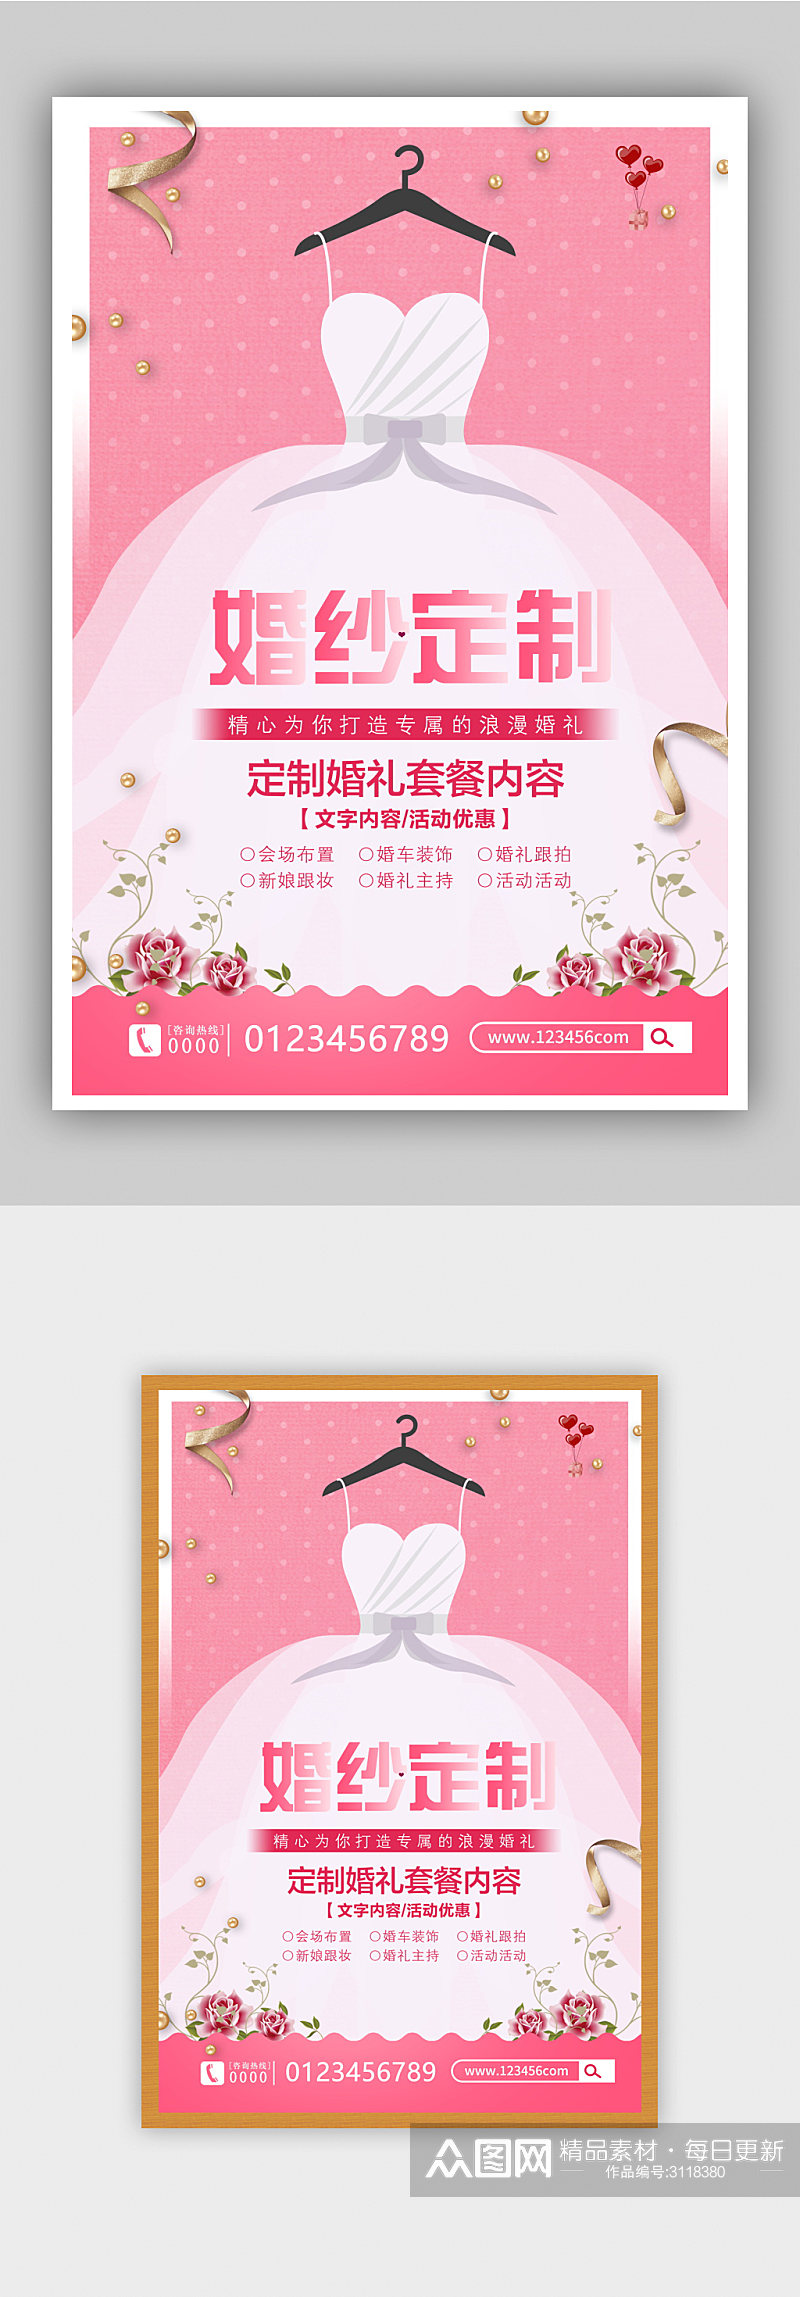 粉色大气婚纱定制海报设计素材